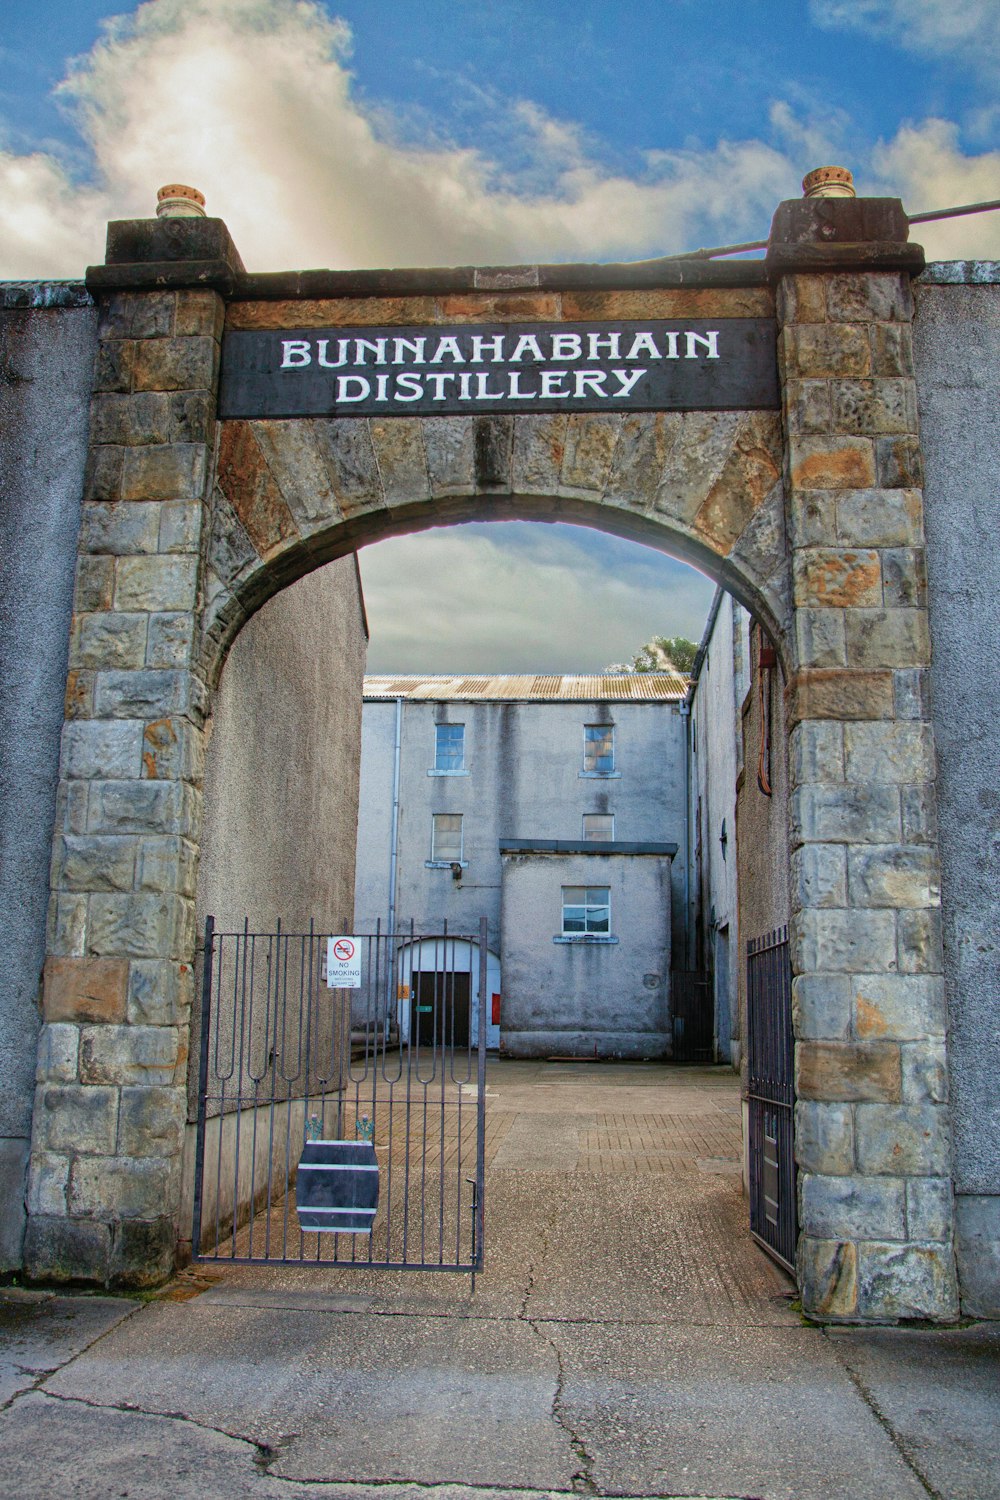 the entrance to the bunnahah basin distillerry